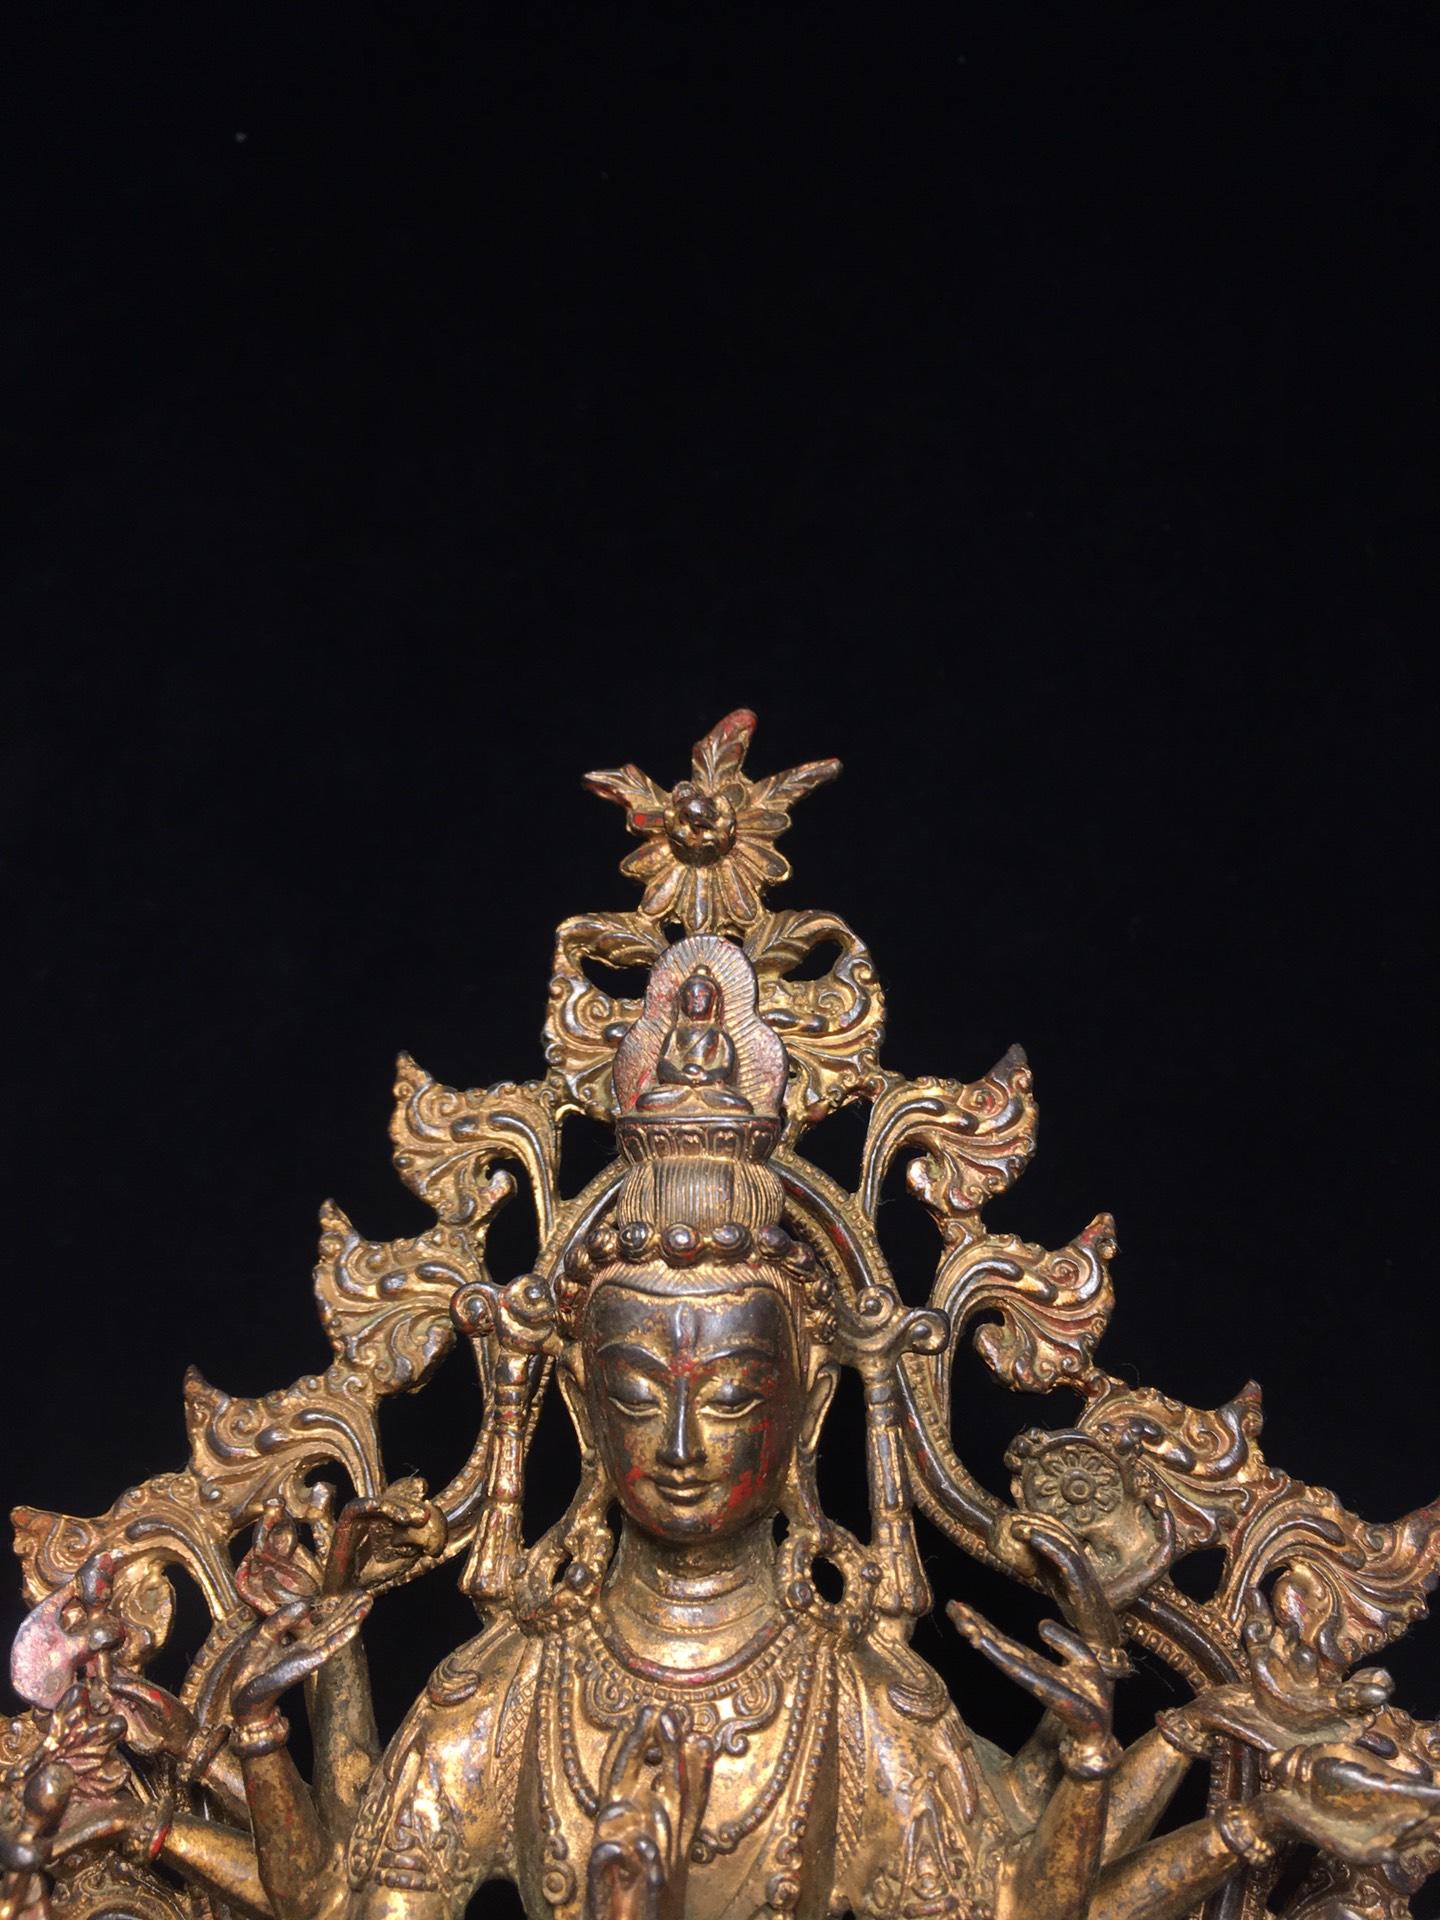 純銅準提菩薩佛像，寬20cm高34cm厚12cm，重2公斤，45080R